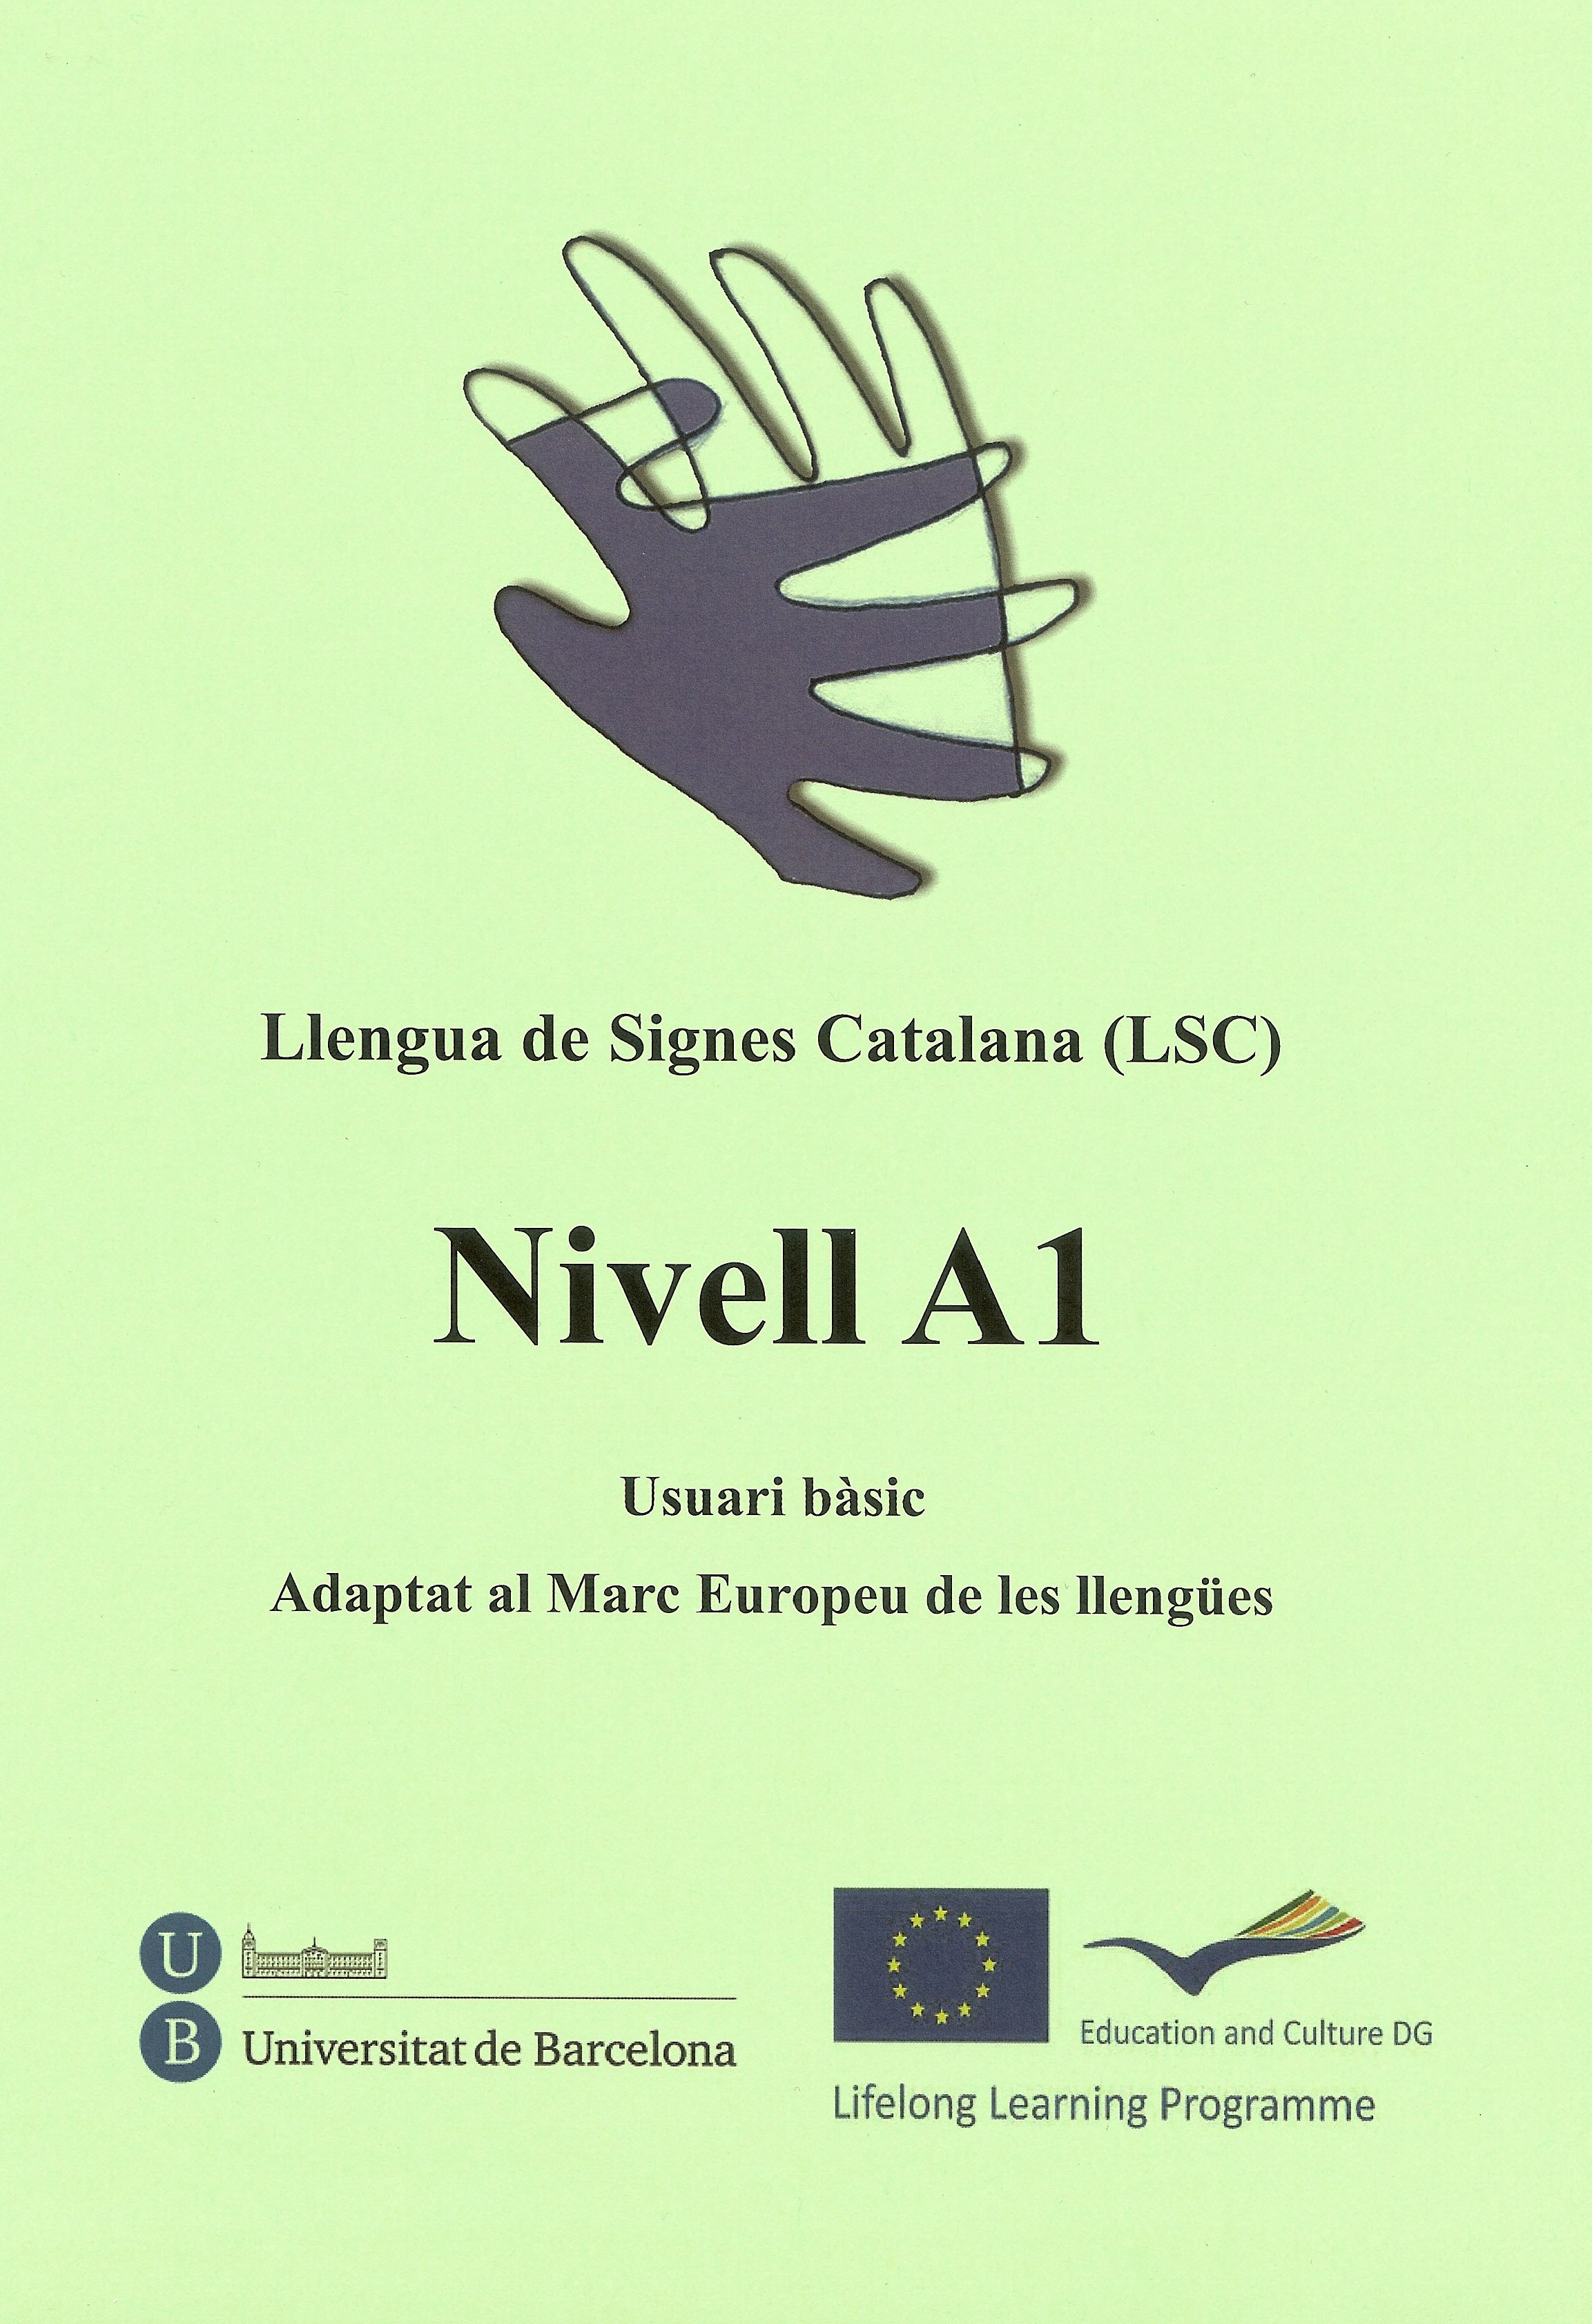 Portada del manual <i>Llengua de signes catalana (LSC). Nivell A1</i>.